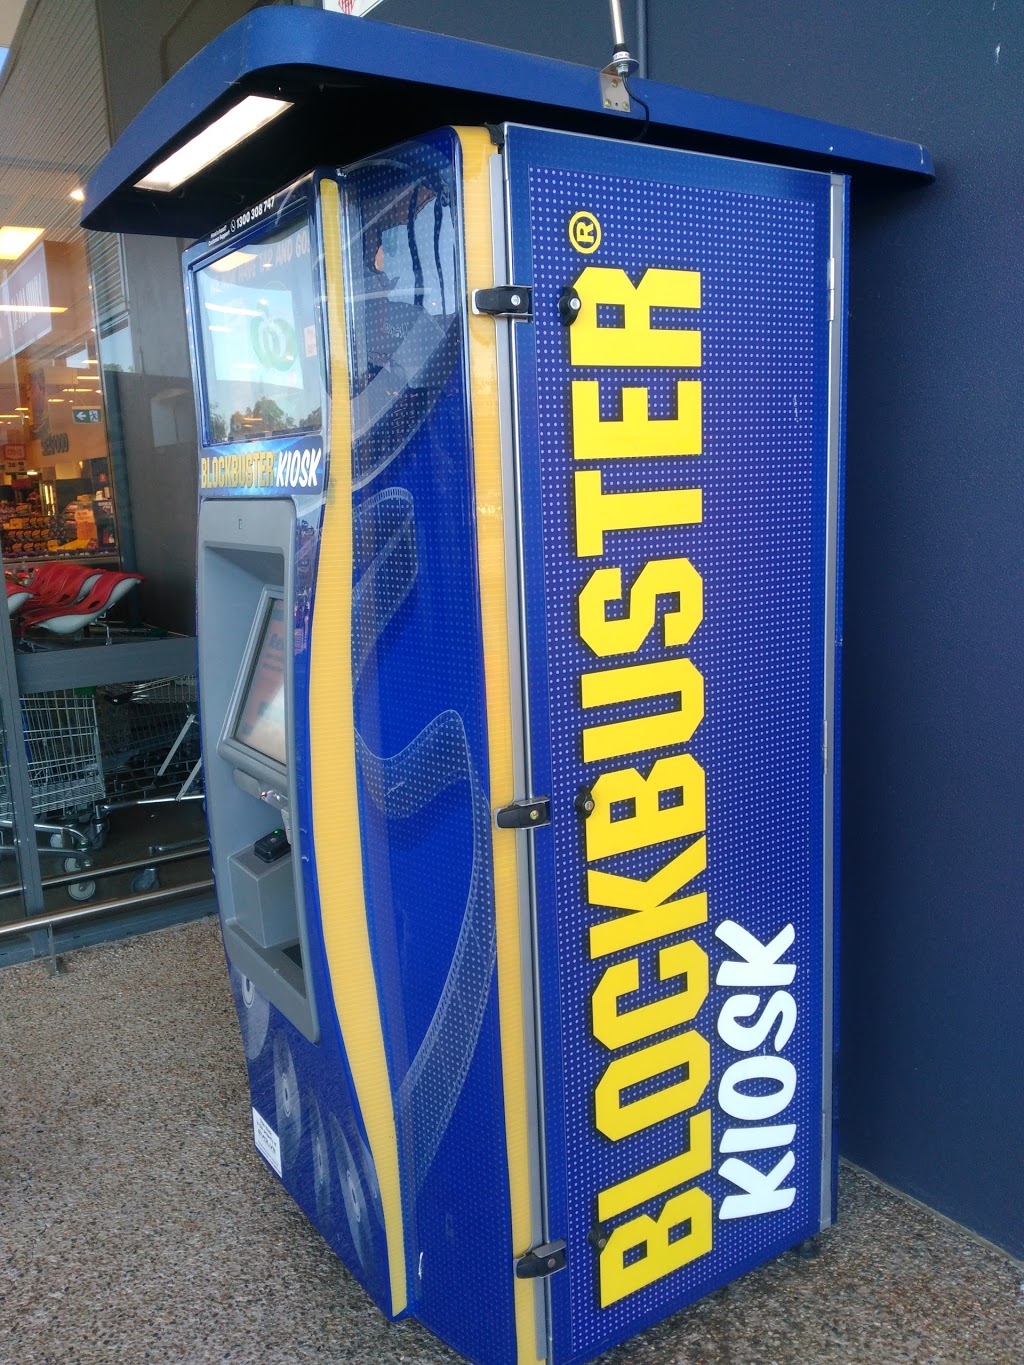 Blockbuster Kiosk | 11 Pub Ln, Greenbank QLD 4124, Australia